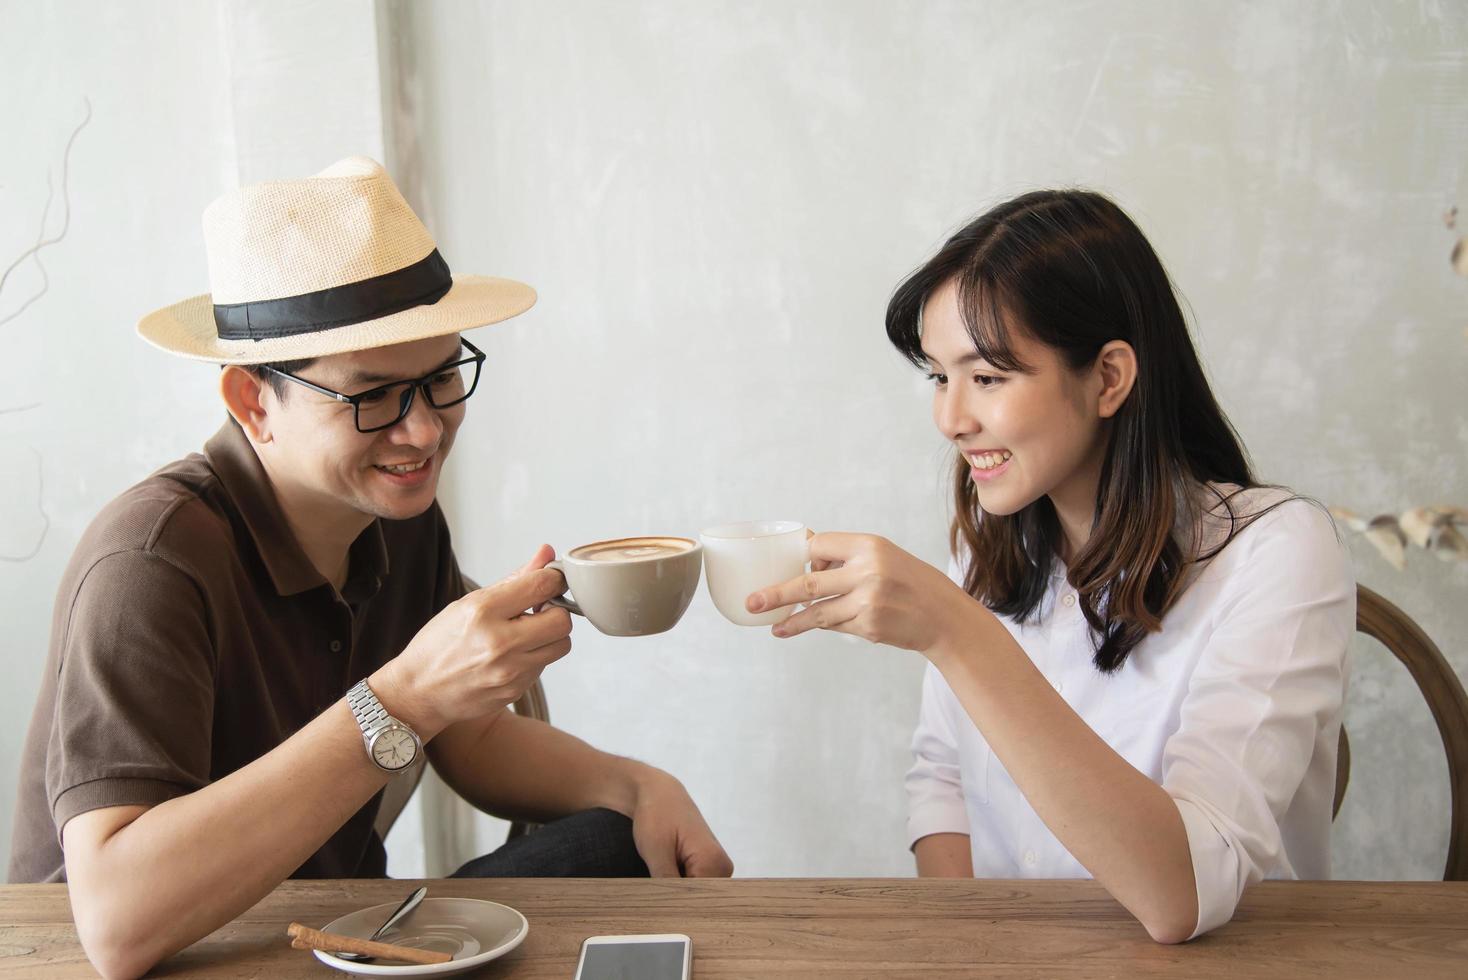 homem casual e mulher conversando alegremente enquanto bebe café e olhando para o celular - estilo de vida feliz no café foto